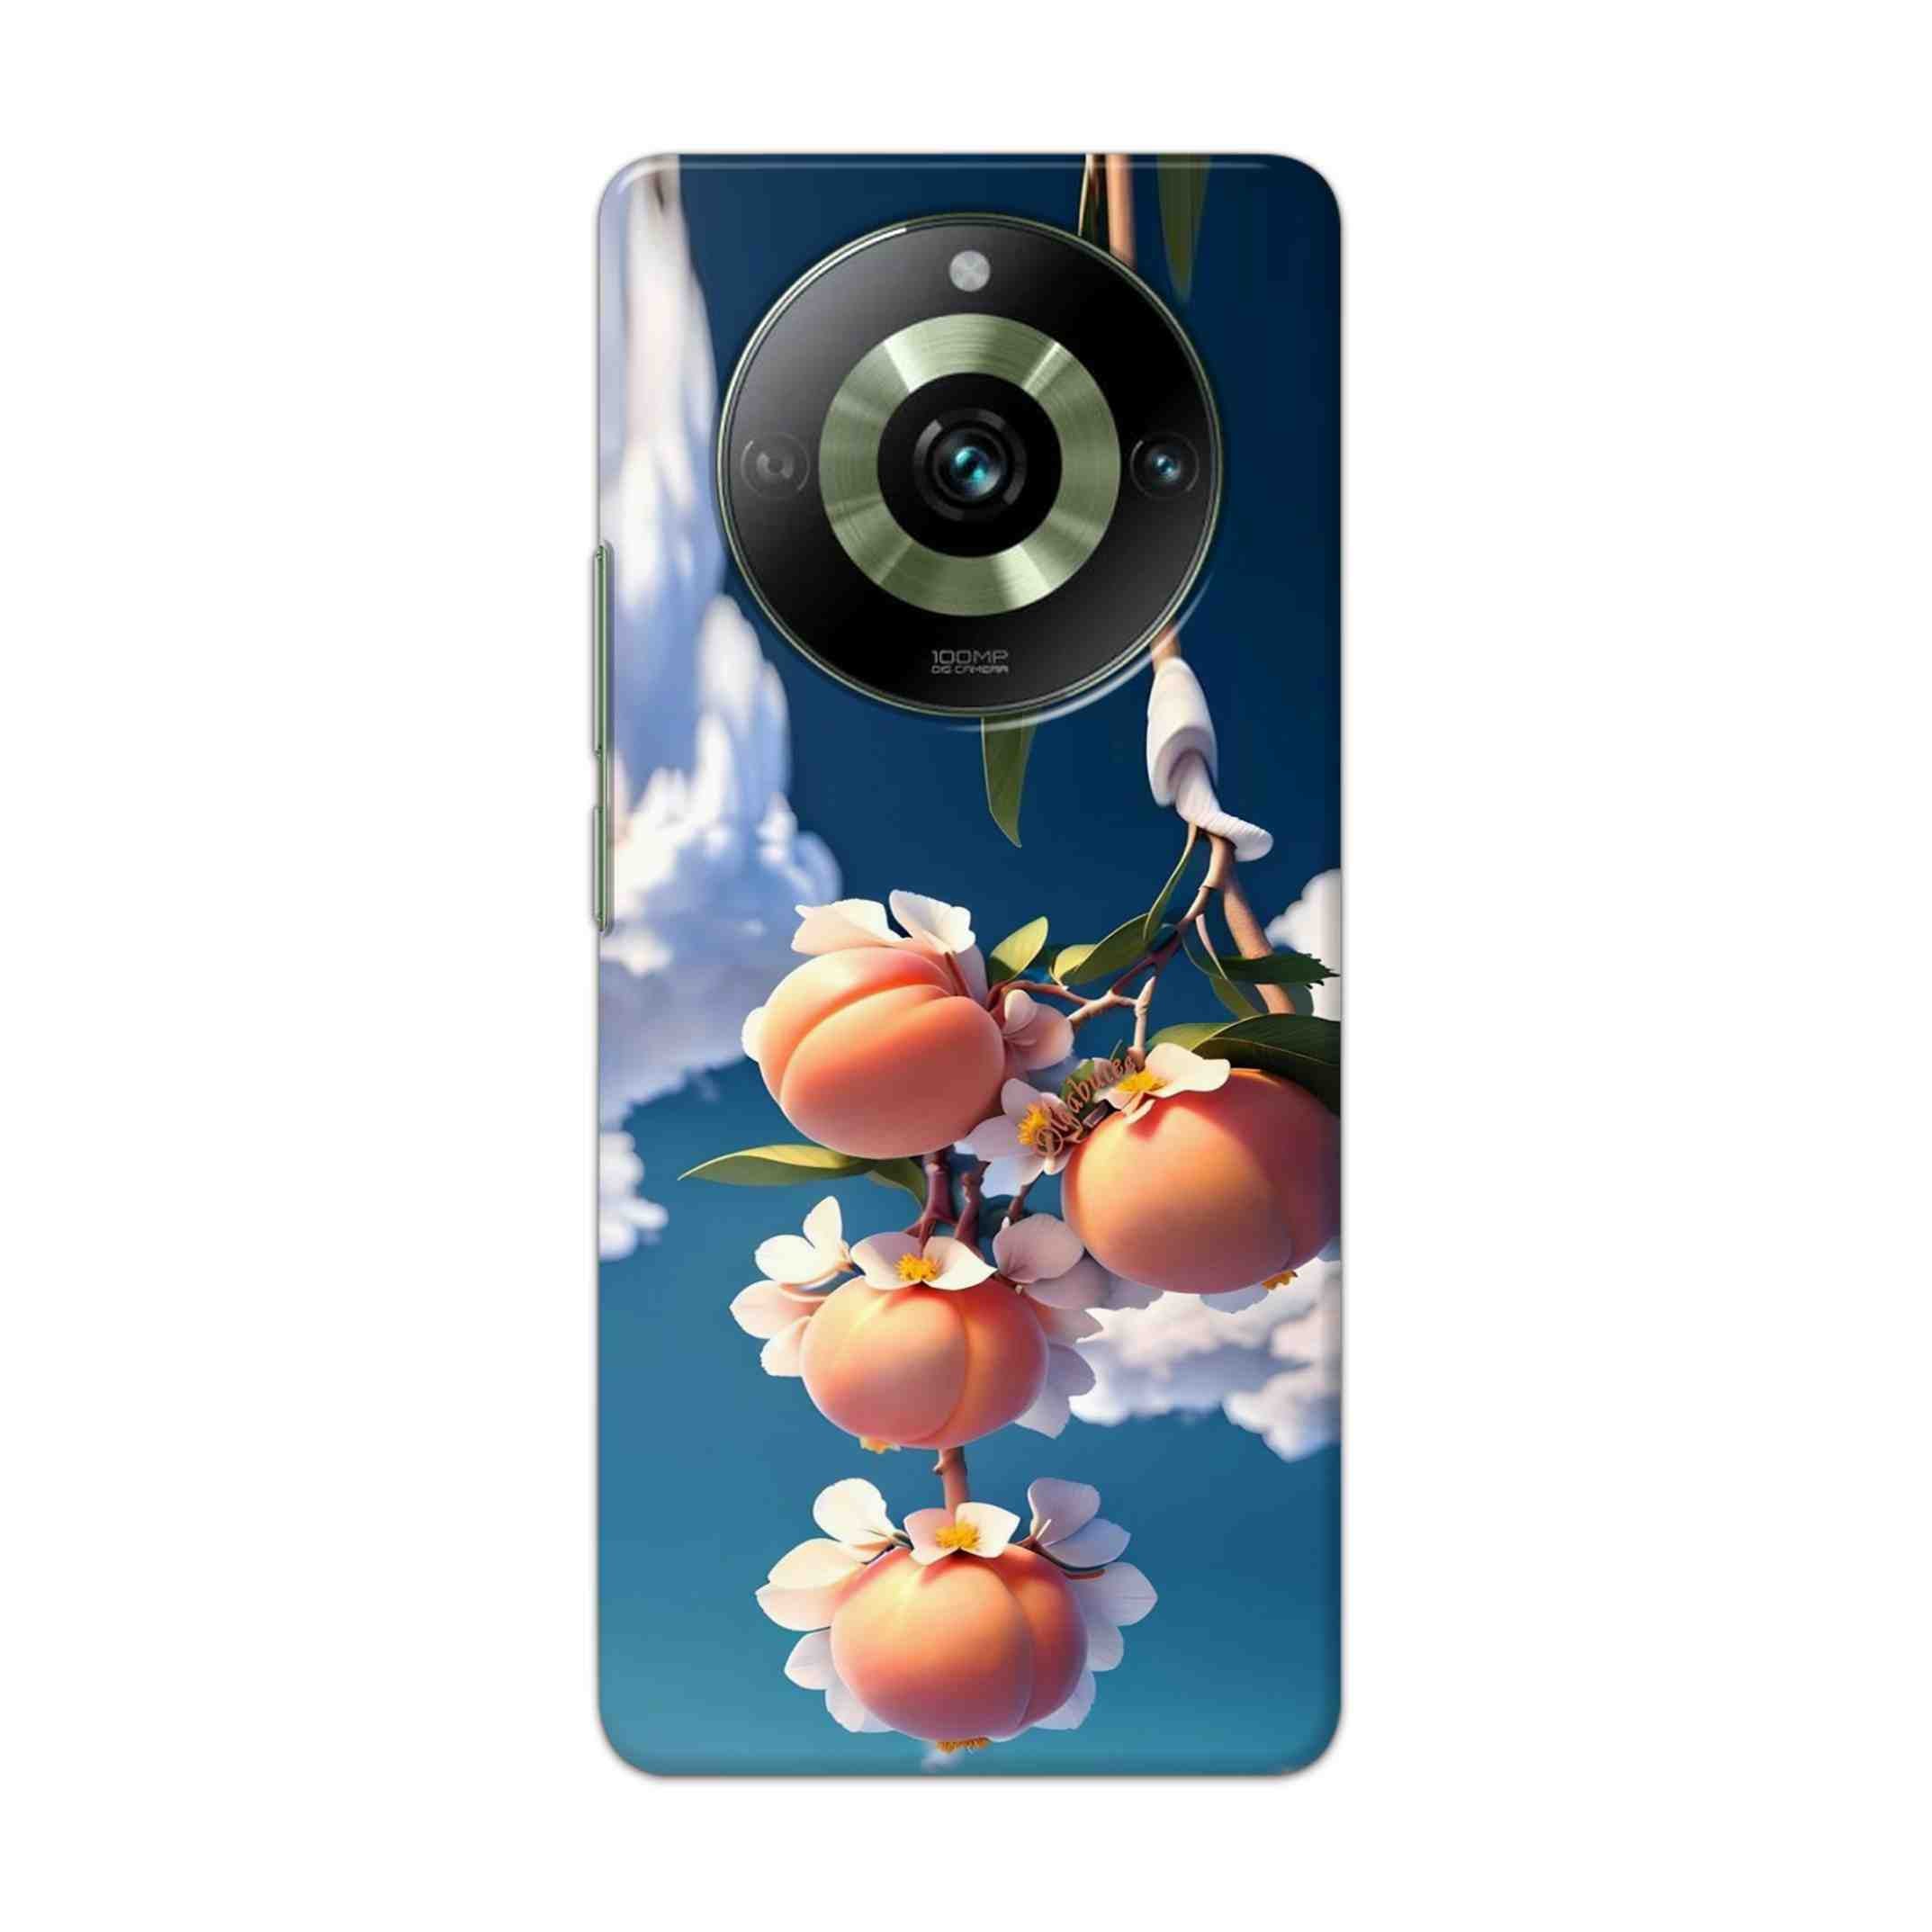 Buy Fruit Hard Back Mobile Phone Case Cover For Realme11 pro5g Online